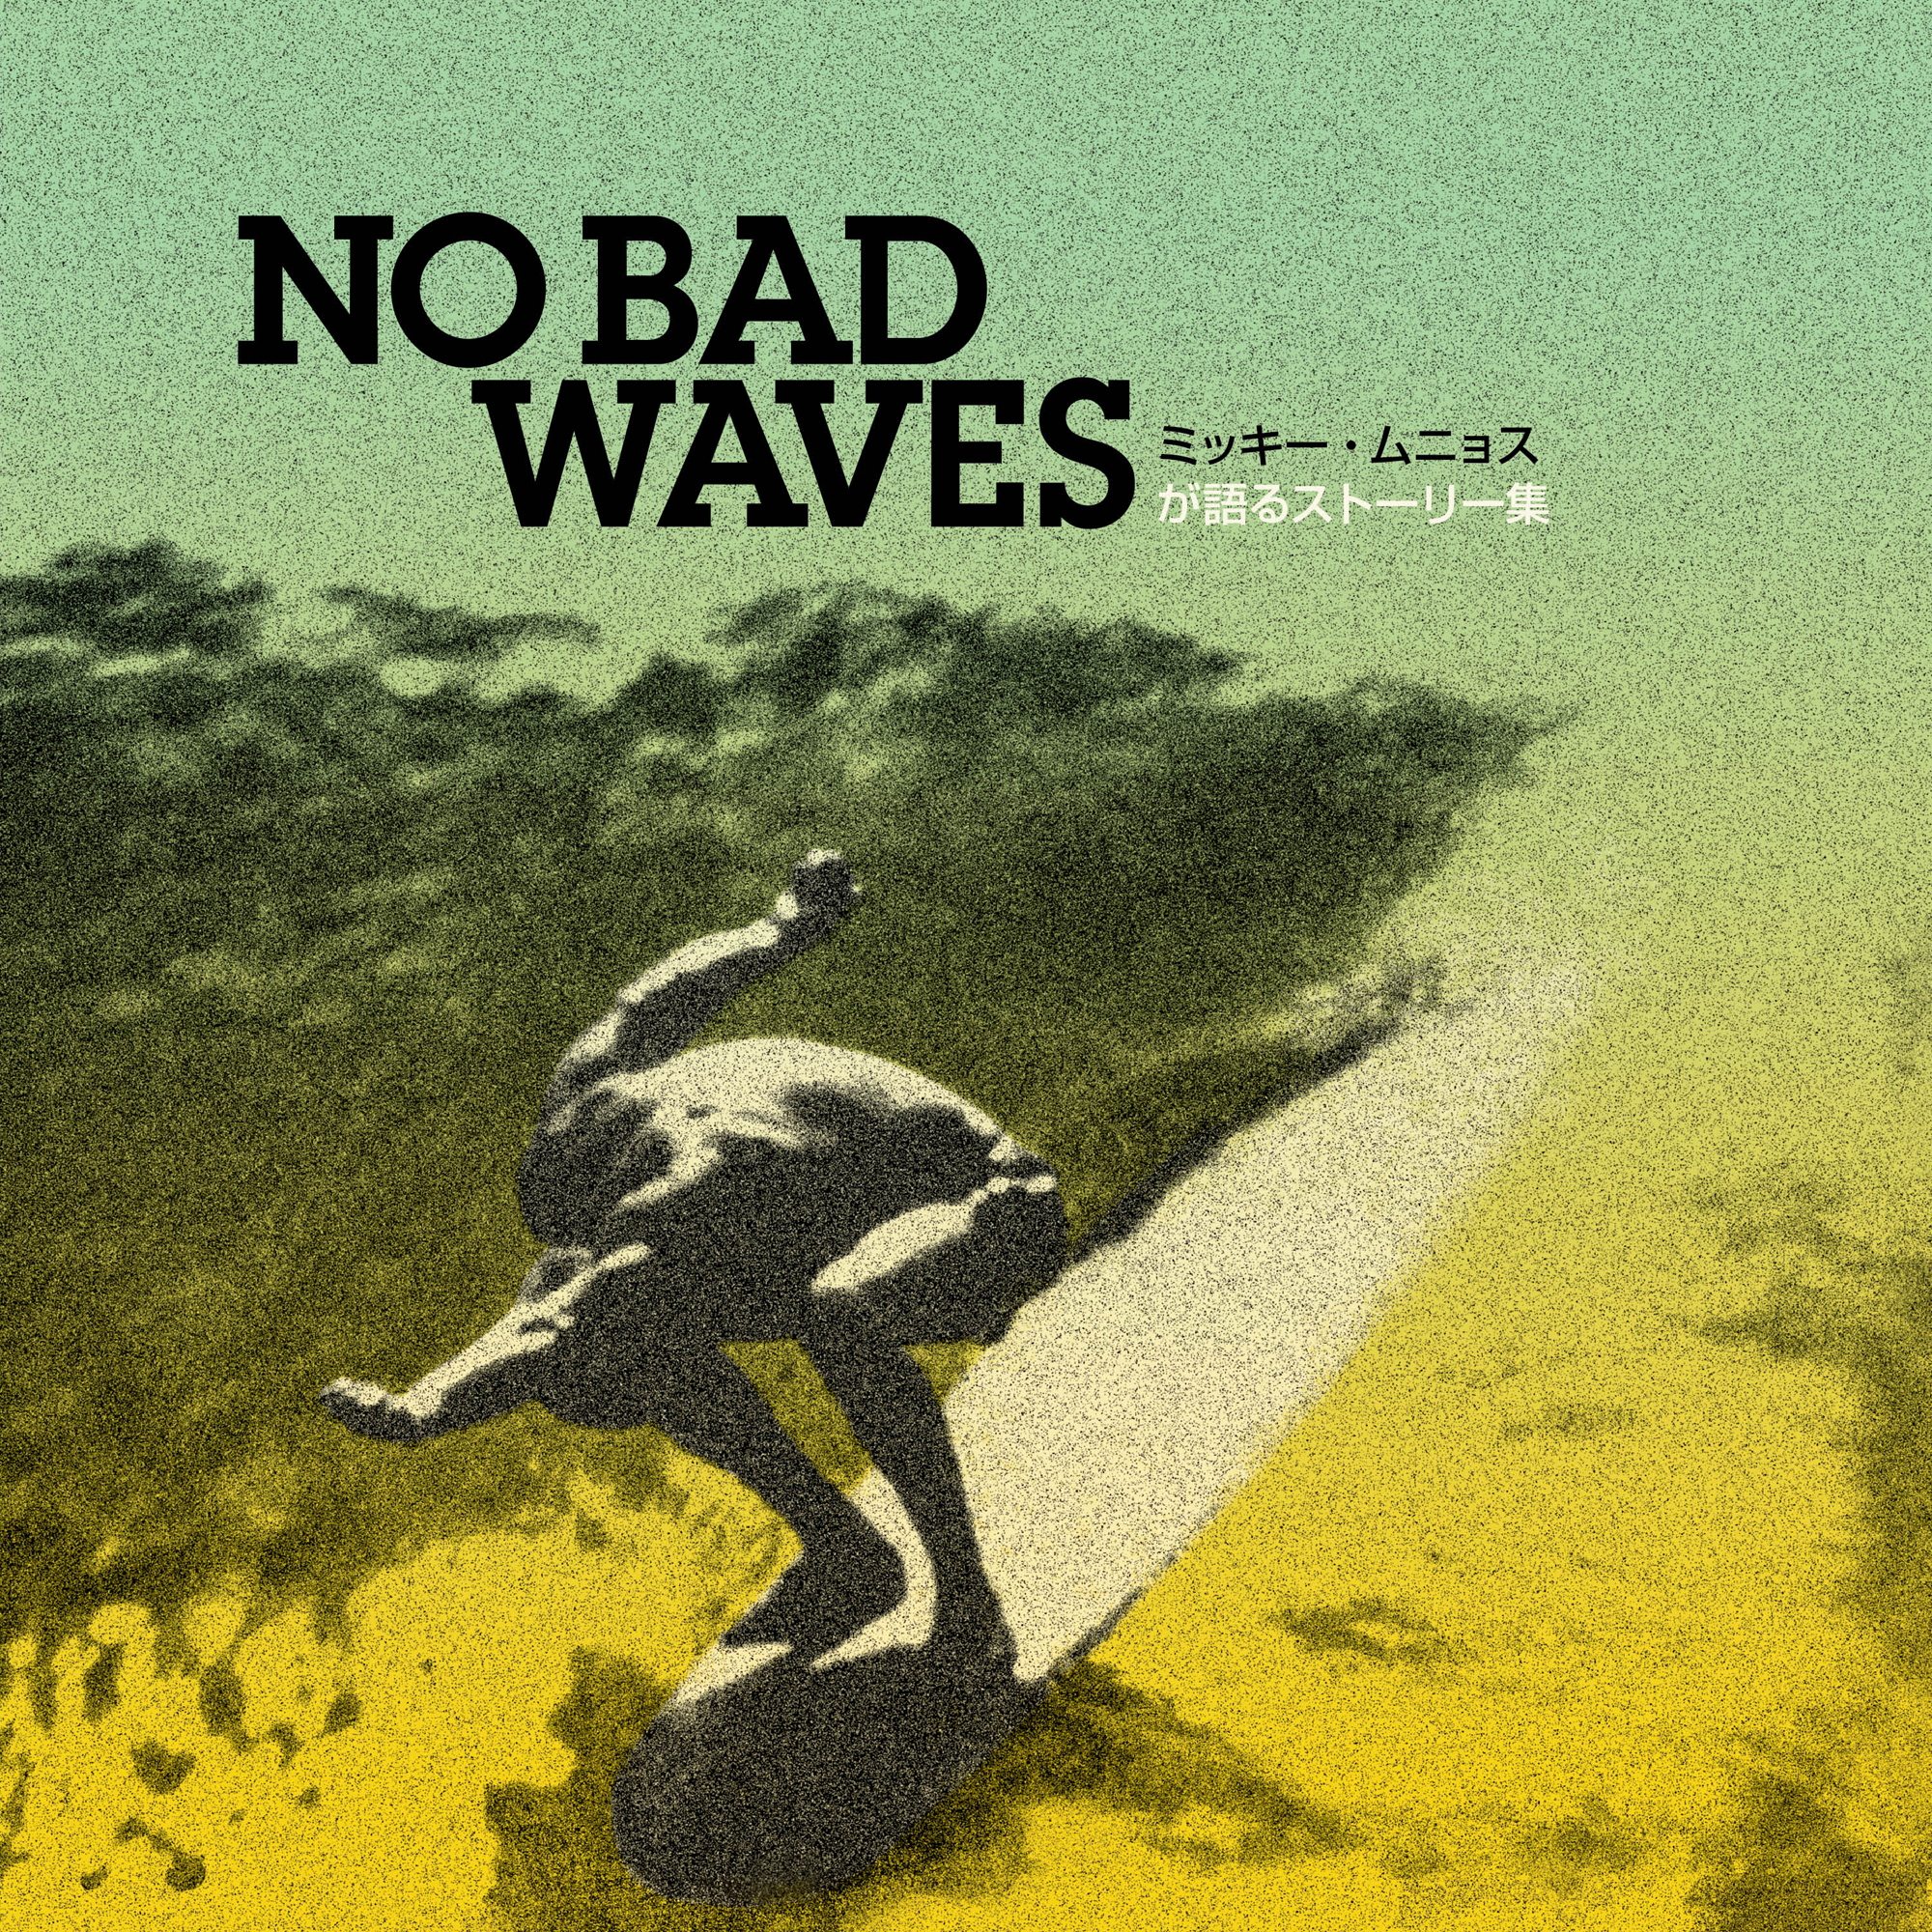 すべての日本の友人たちへ No Bad Waves ミッキー ムニョスが語るストーリー集 日本語版発売 クリーネストライン